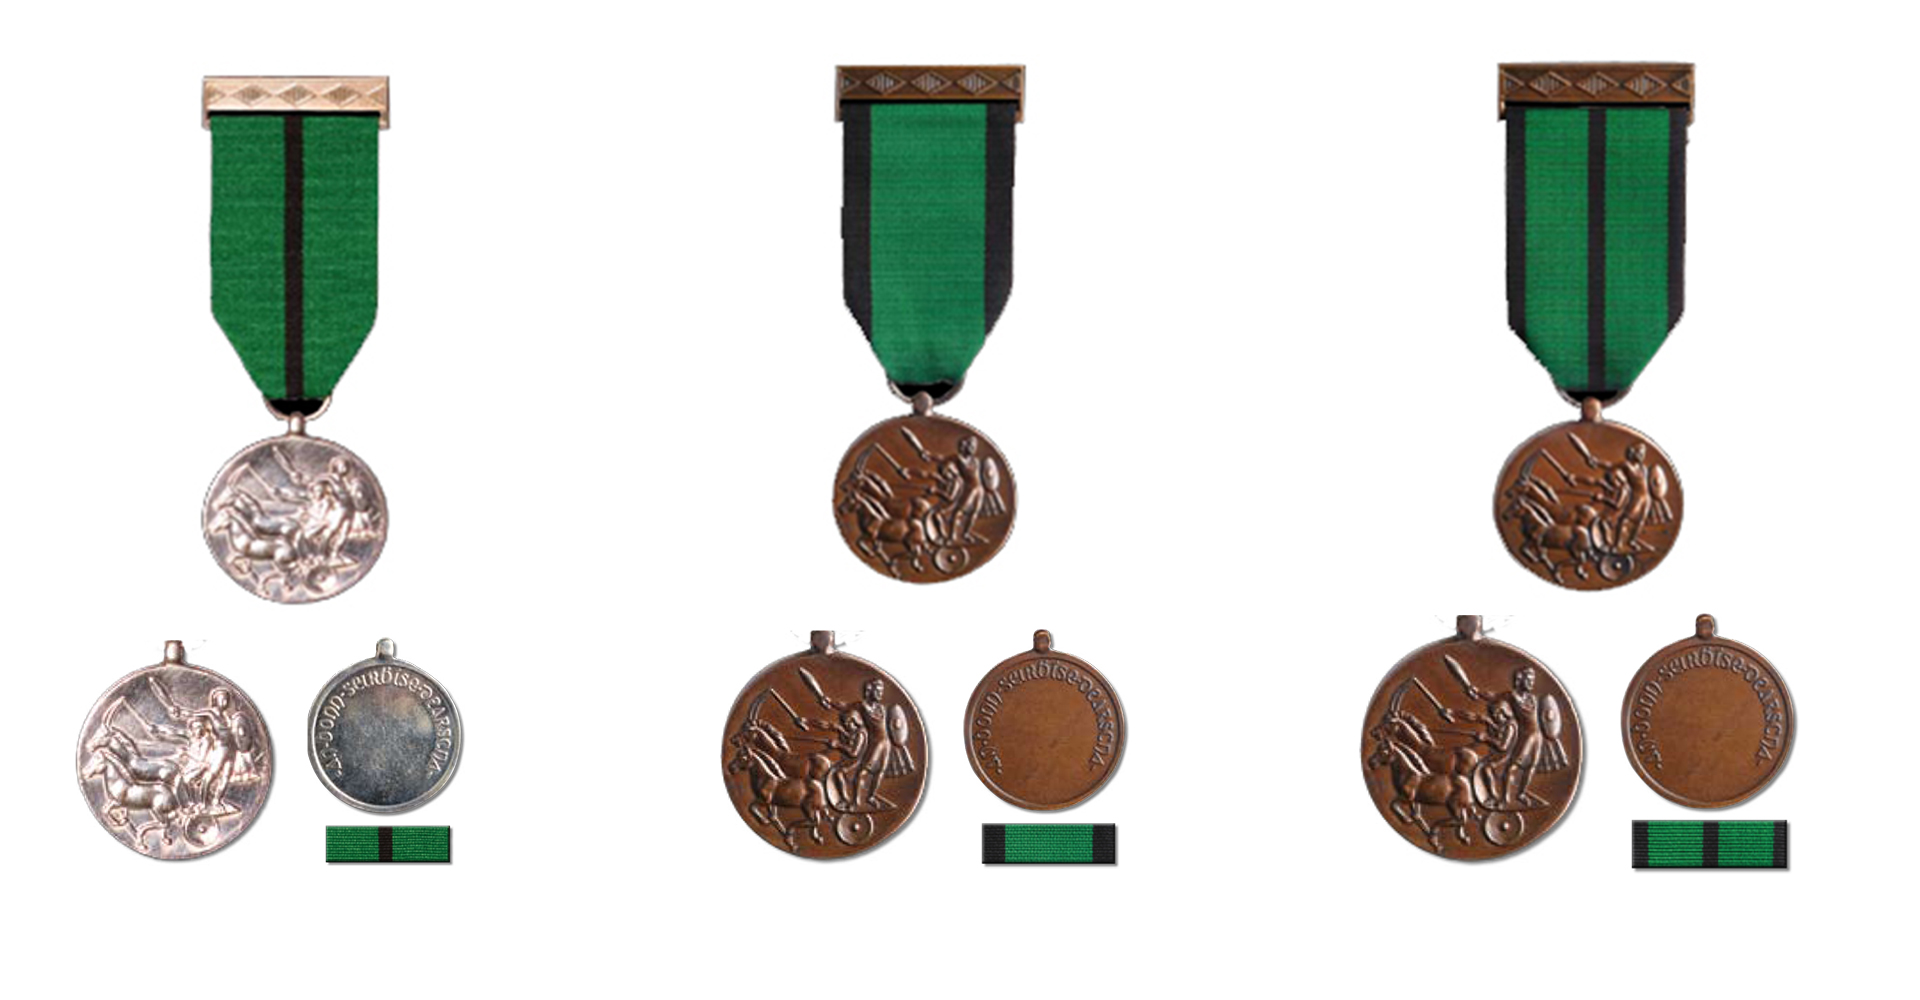 The Distinguished Service Medal (DSM)